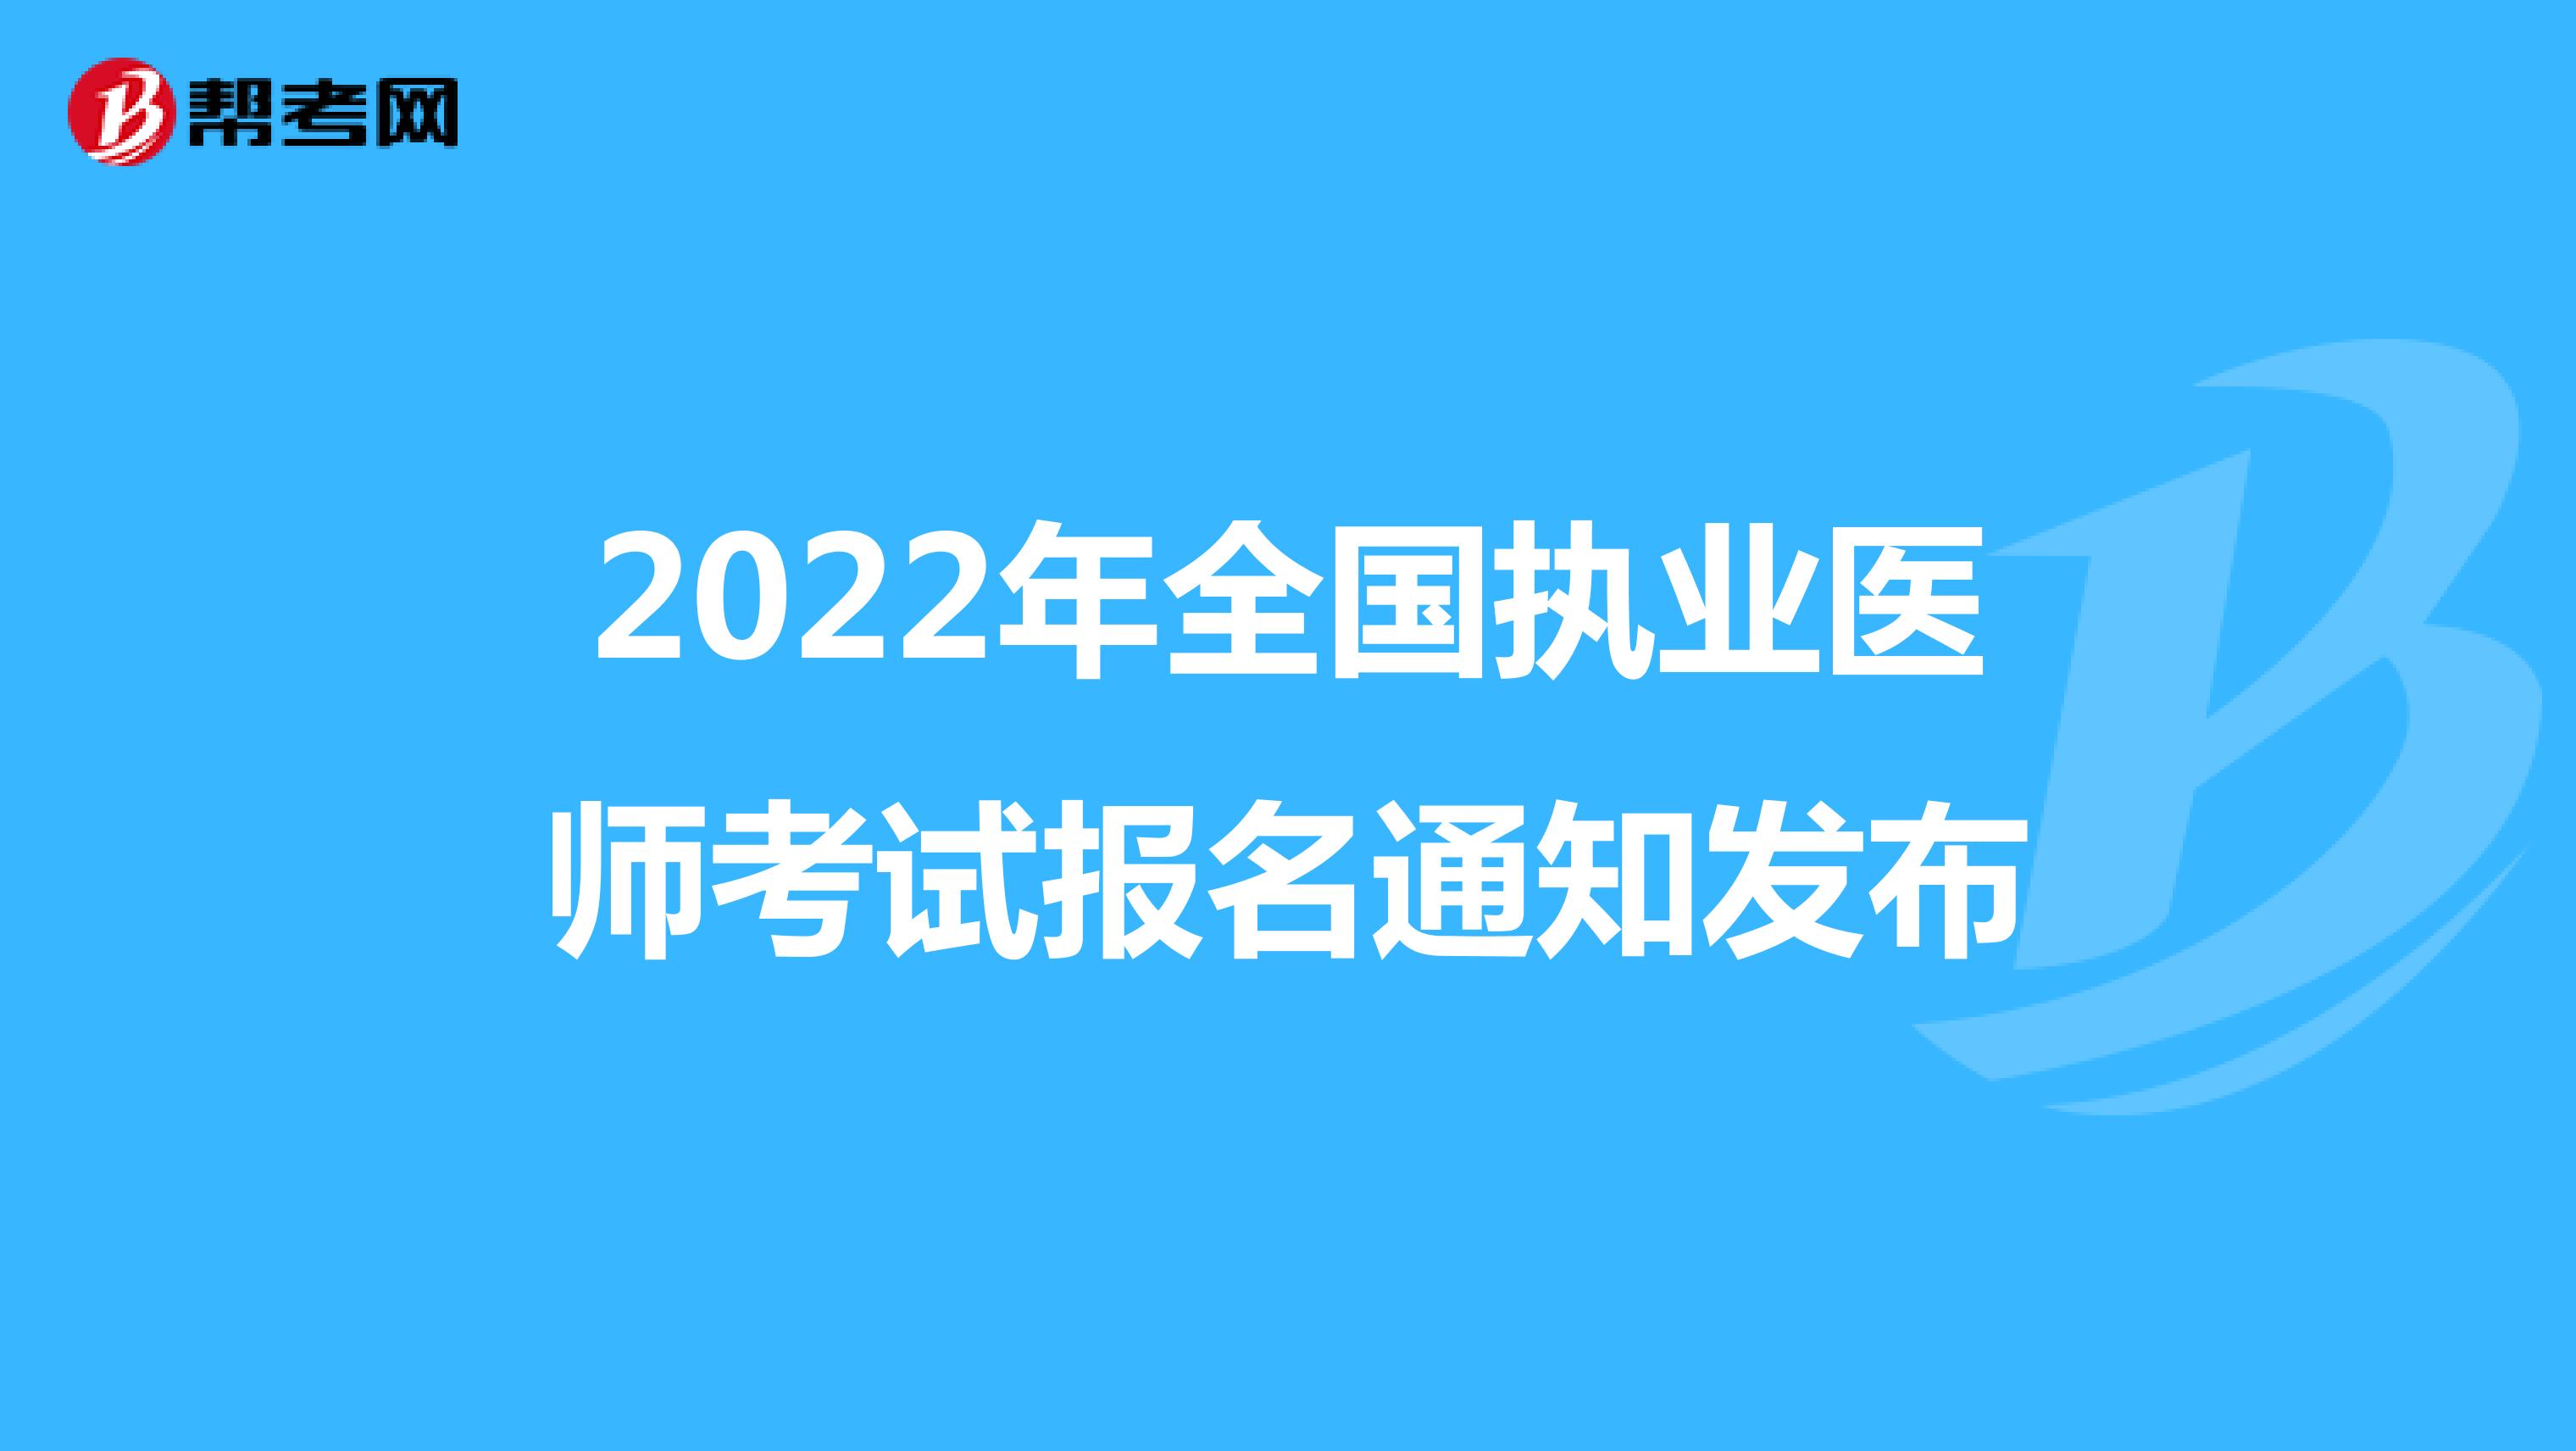 2022年全国执业医师考试报名通知发布